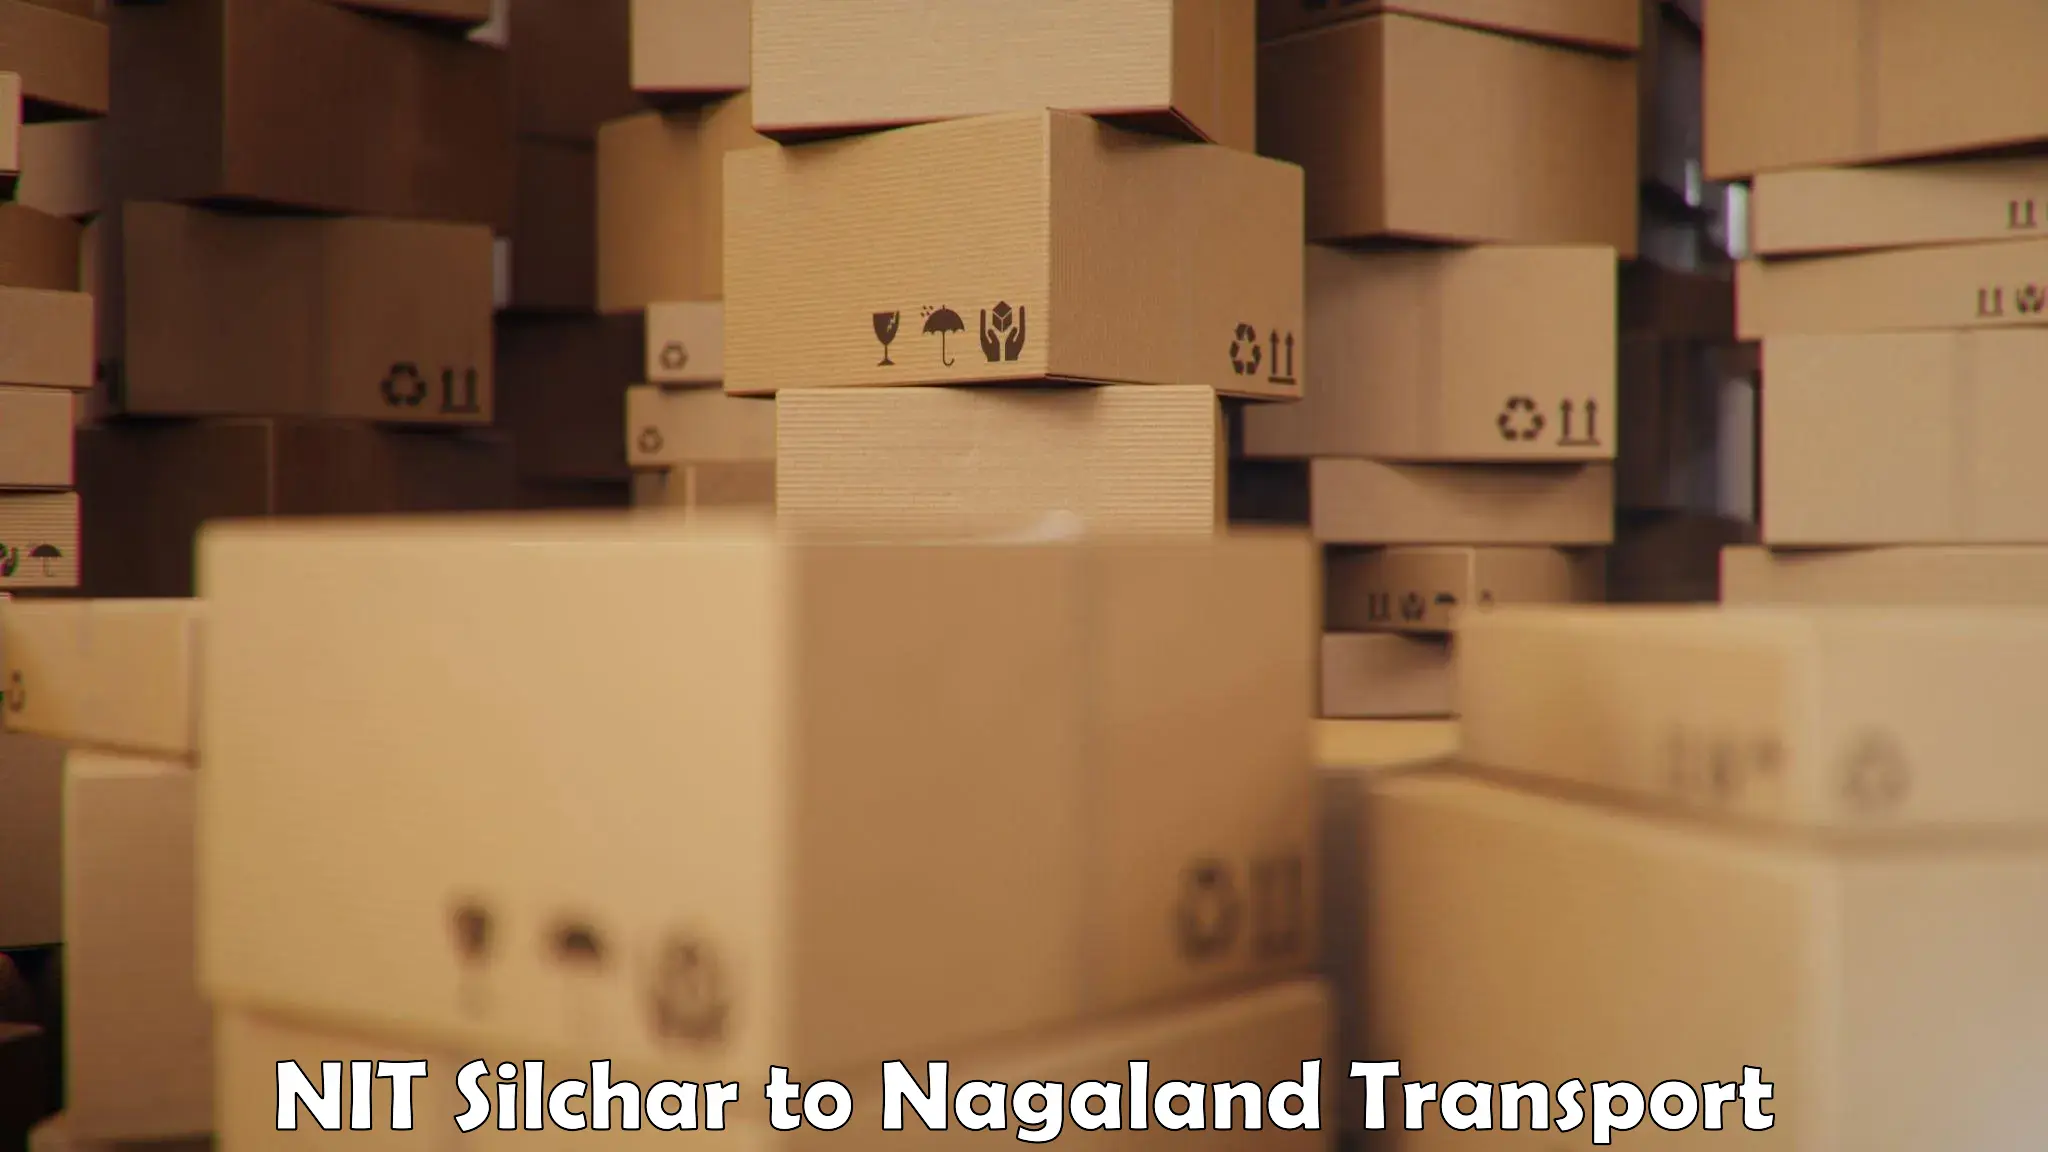 Online transport service NIT Silchar to Nagaland